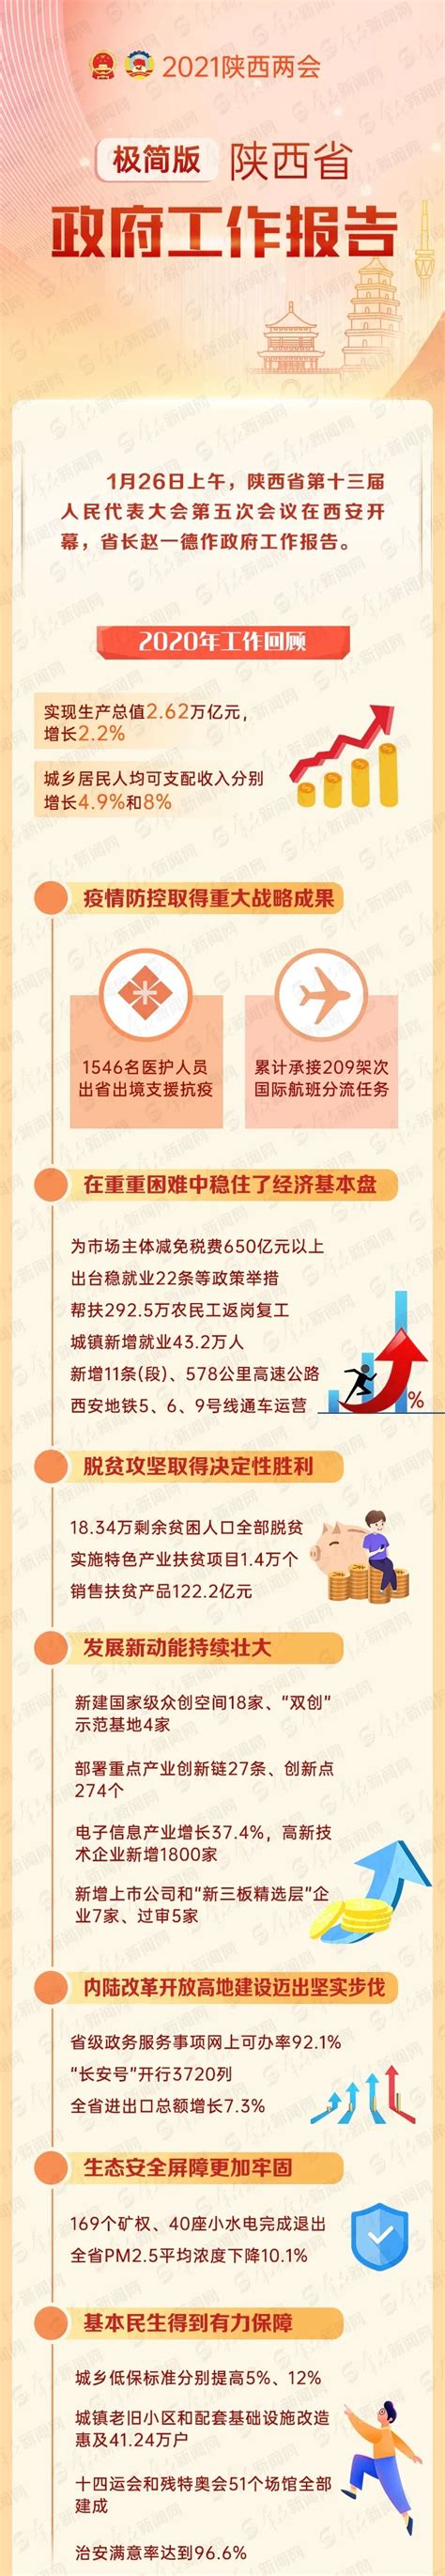 一图读懂陕西省2021政府工作报告 - 政策解读 - 佛坪县人民政府